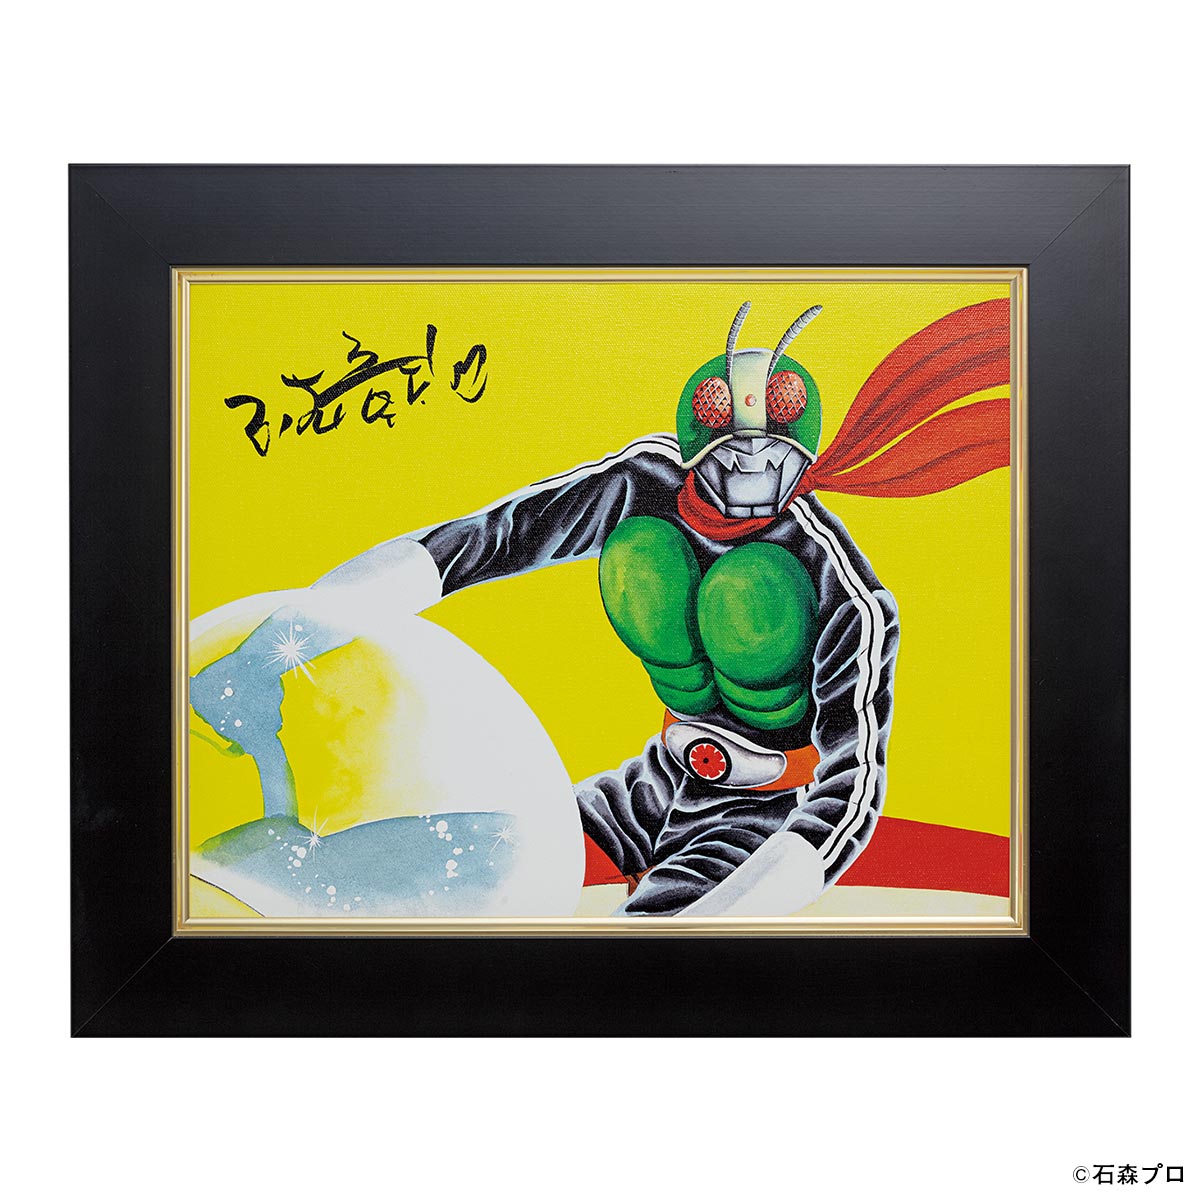 石ノ森章太郎が描く「仮面ライダー新1号」が高精細デジタル版画で 